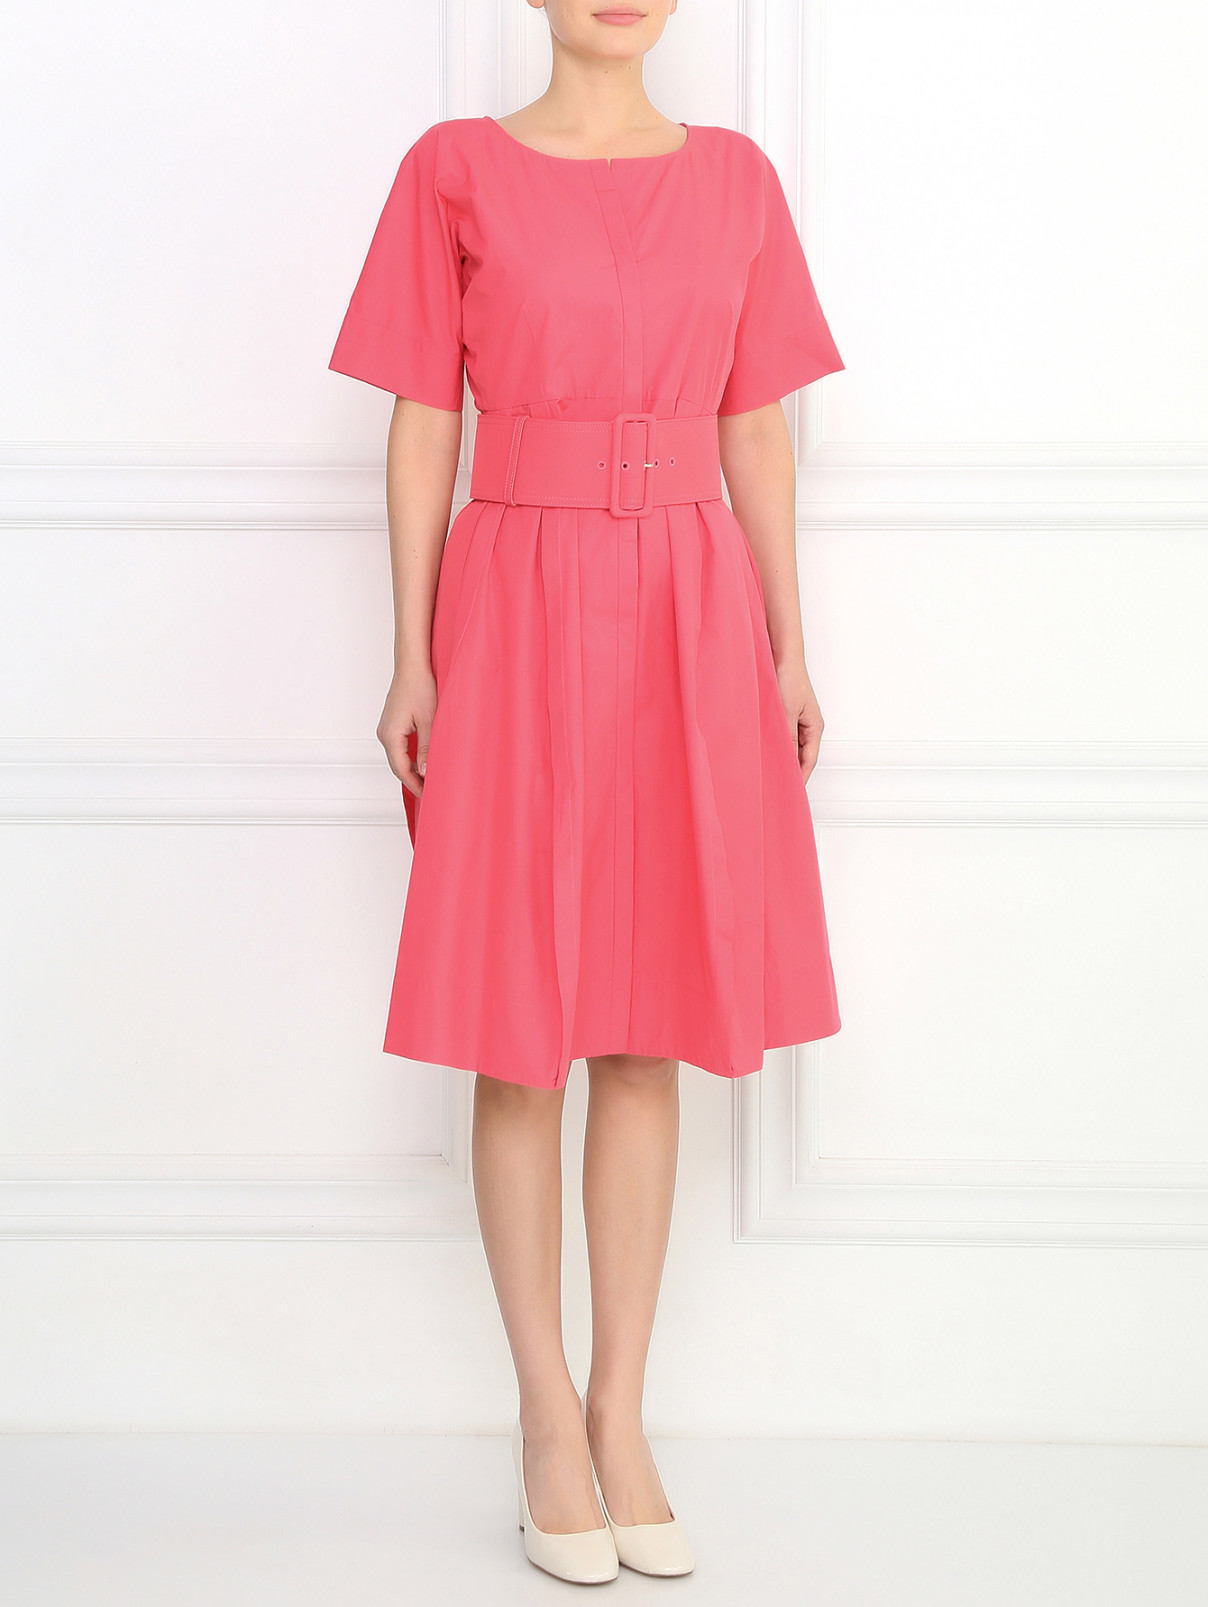 Платье-футляр из хлопка с поясом Jil Sander  –  Модель Общий вид  – Цвет:  Розовый